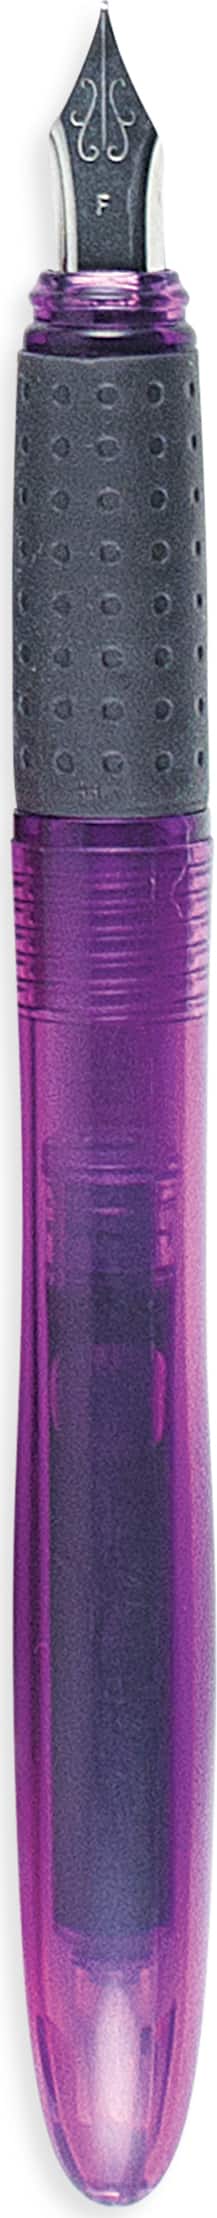 Ooly Splendid Fountain Pen - Purple